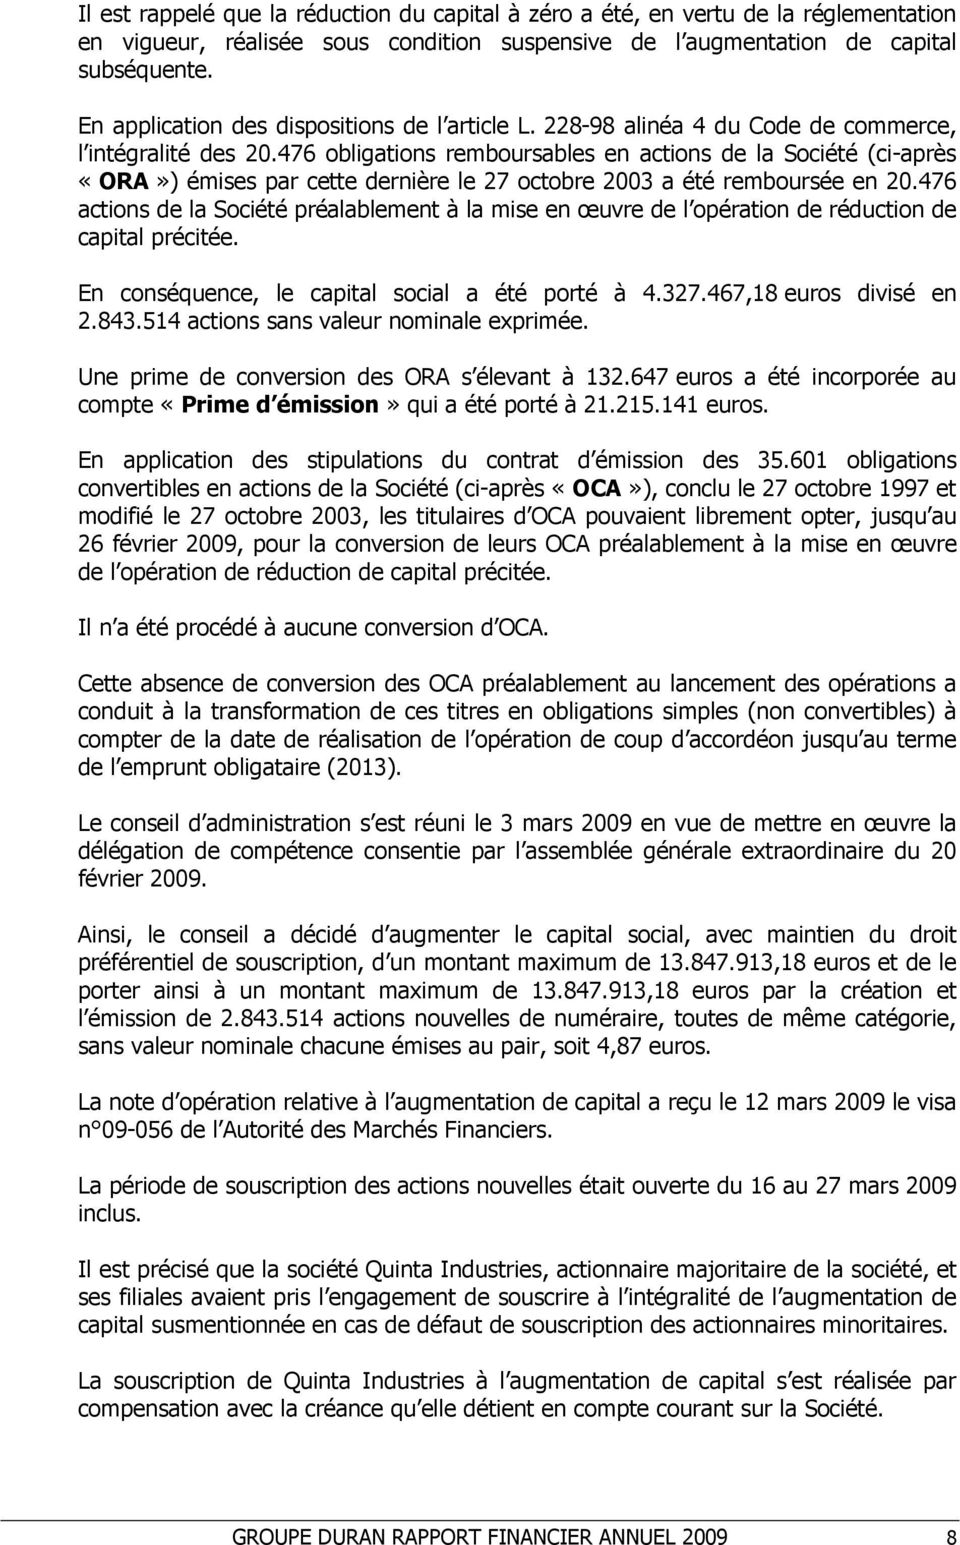 476 obligations remboursables en actions de la Société (ci-après «ORA») émises par cette dernière le 27 octobre 2003 a été remboursée en 20.